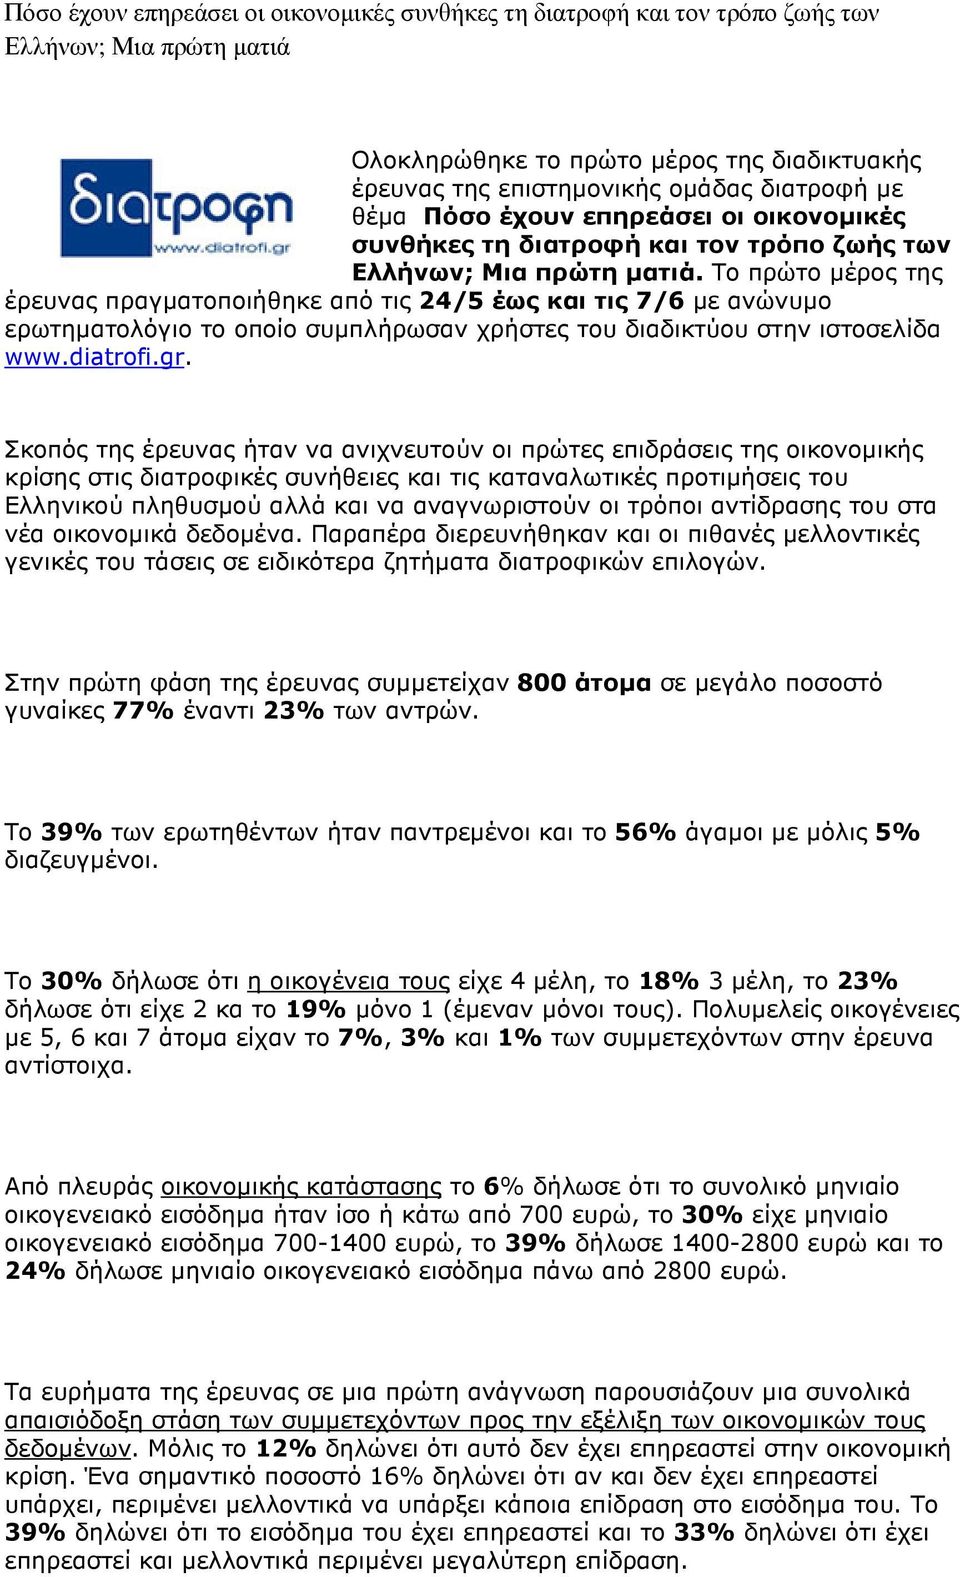 Το πρώτο µέρος της έρευνας πραγµατοποιήθηκε από τις 24/5 έως και τις 7/6 µε ανώνυµο ερωτηµατολόγιο το οποίο συµπλήρωσαν χρήστες του διαδικτύου στην ιστοσελίδα www.diatrofi.gr.